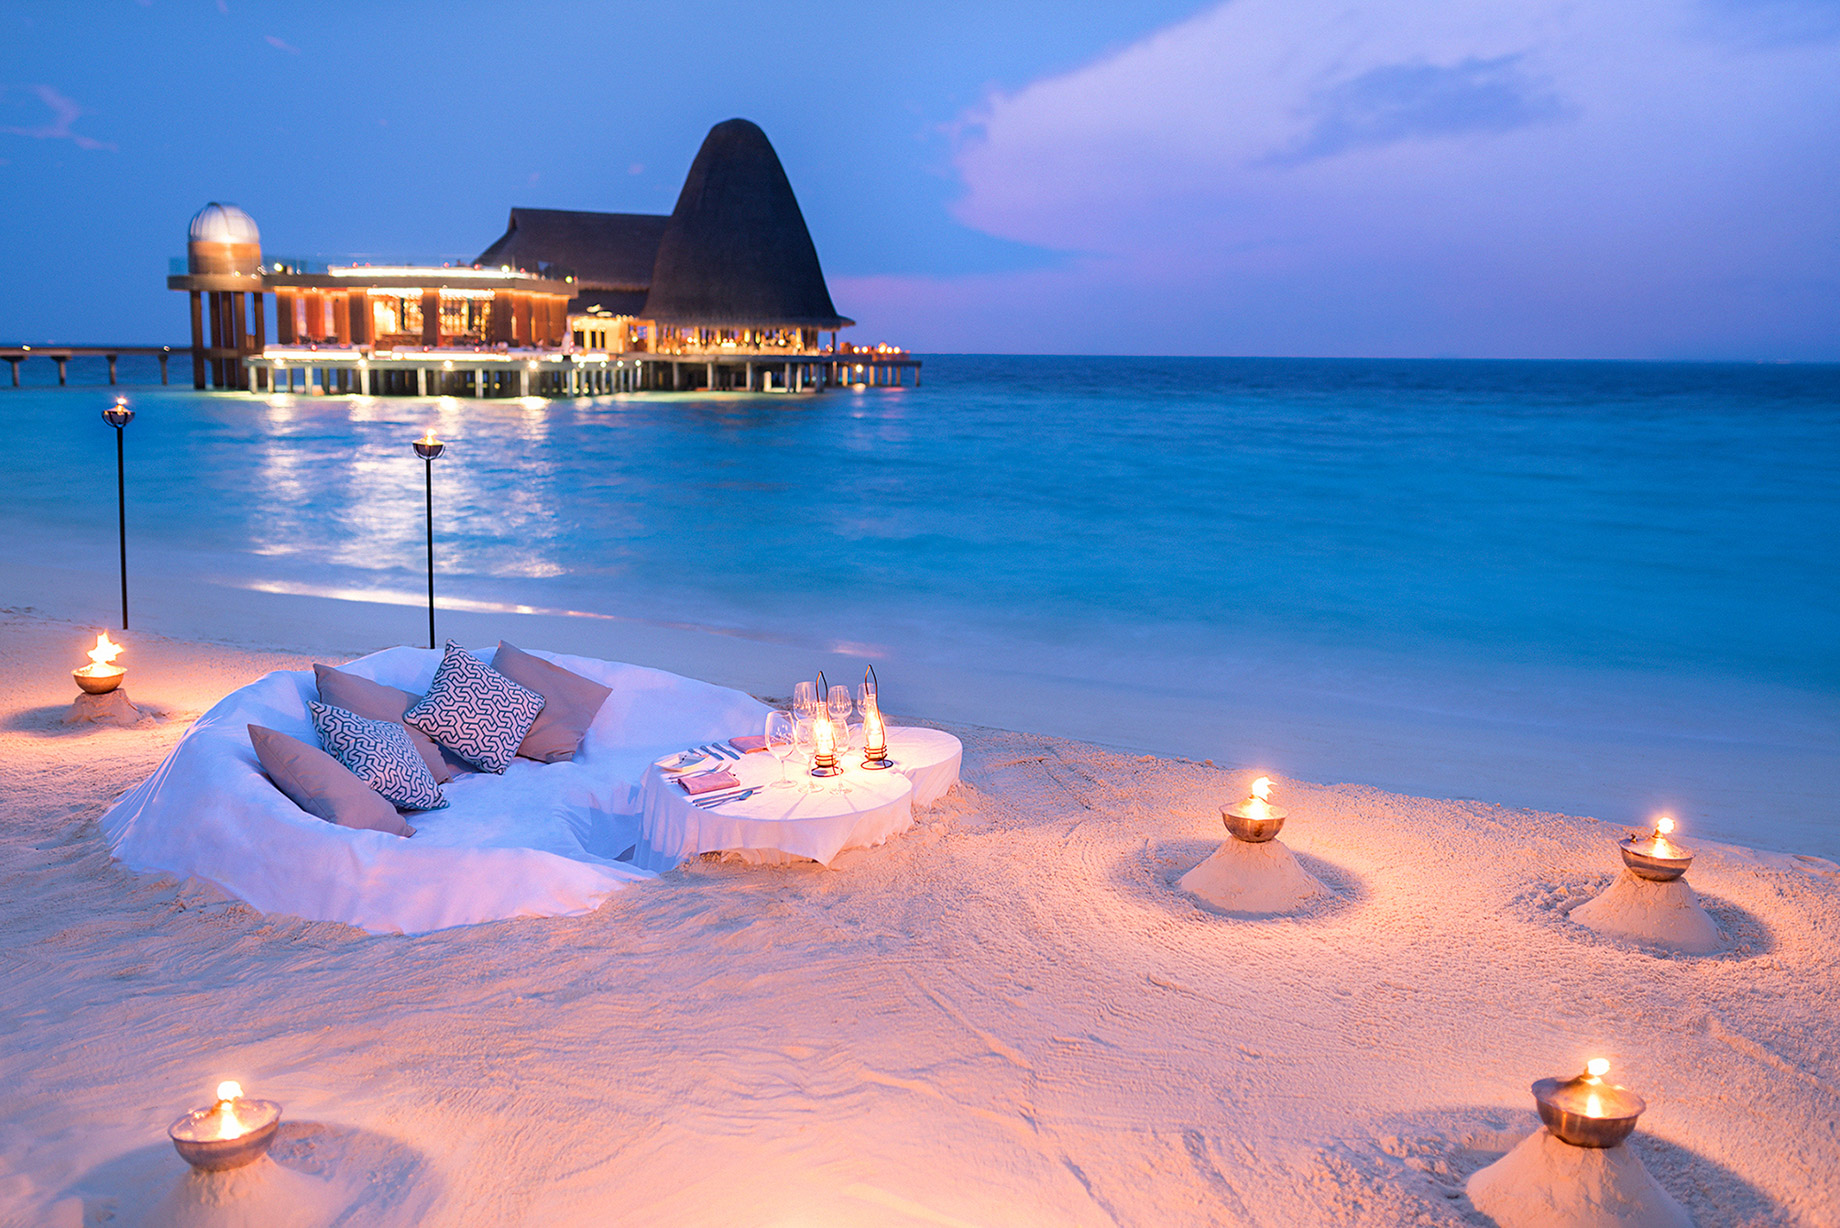 Anantara Kihavah Maldives Villas Resort – Baa Atoll, Maldives – Dining by Design Sand Table Dining Sunset